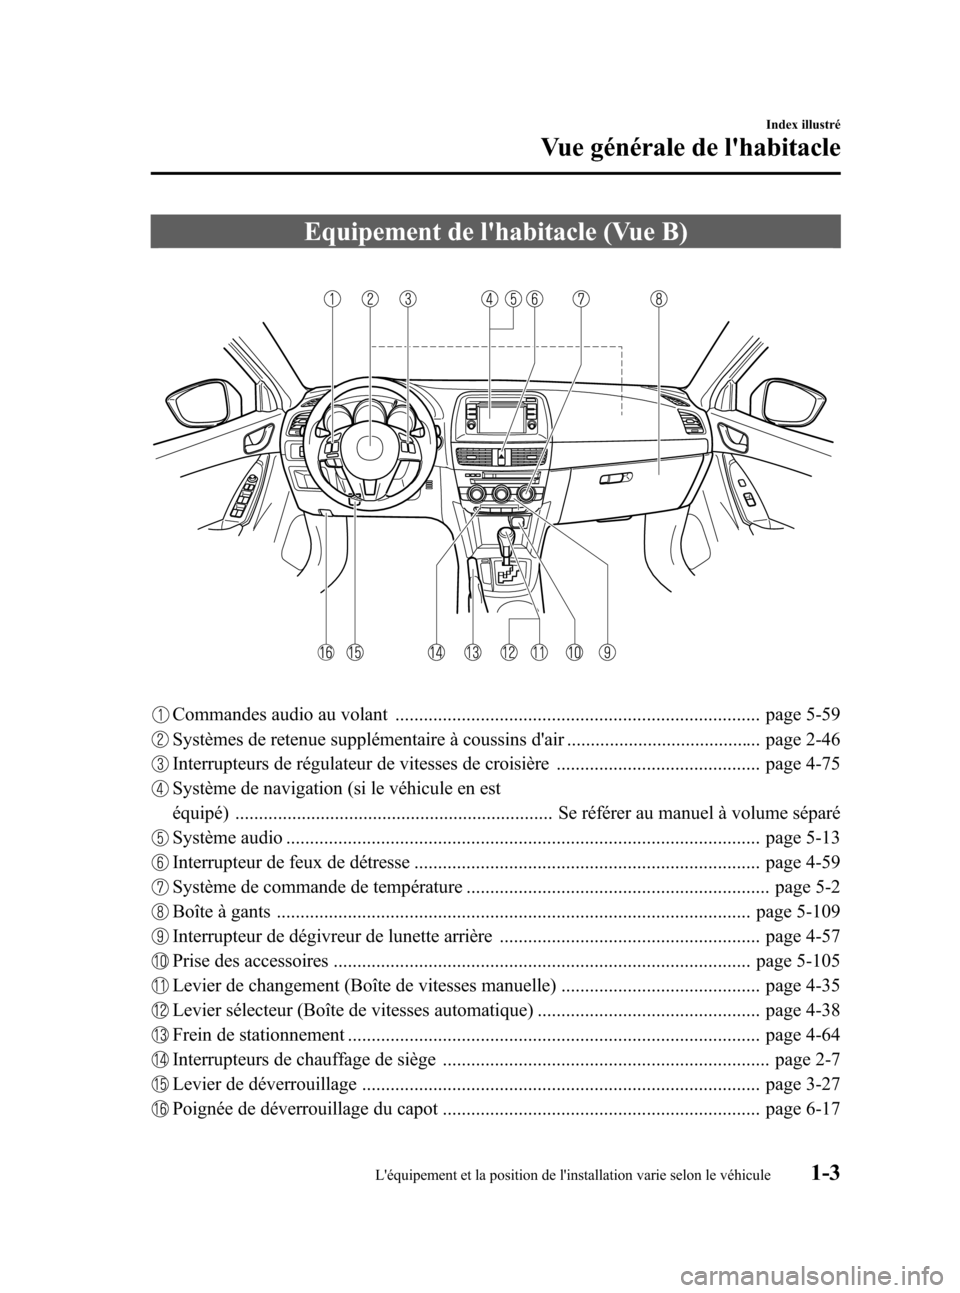 MAZDA MODEL CX-5 2013  Manuel du propriétaire (in French) Black plate (9,1)
Equipement de lhabitacle (Vue B)
Commandes audio au volant ............................................................................. page 5-59
Systèmes de retenue supplémentai